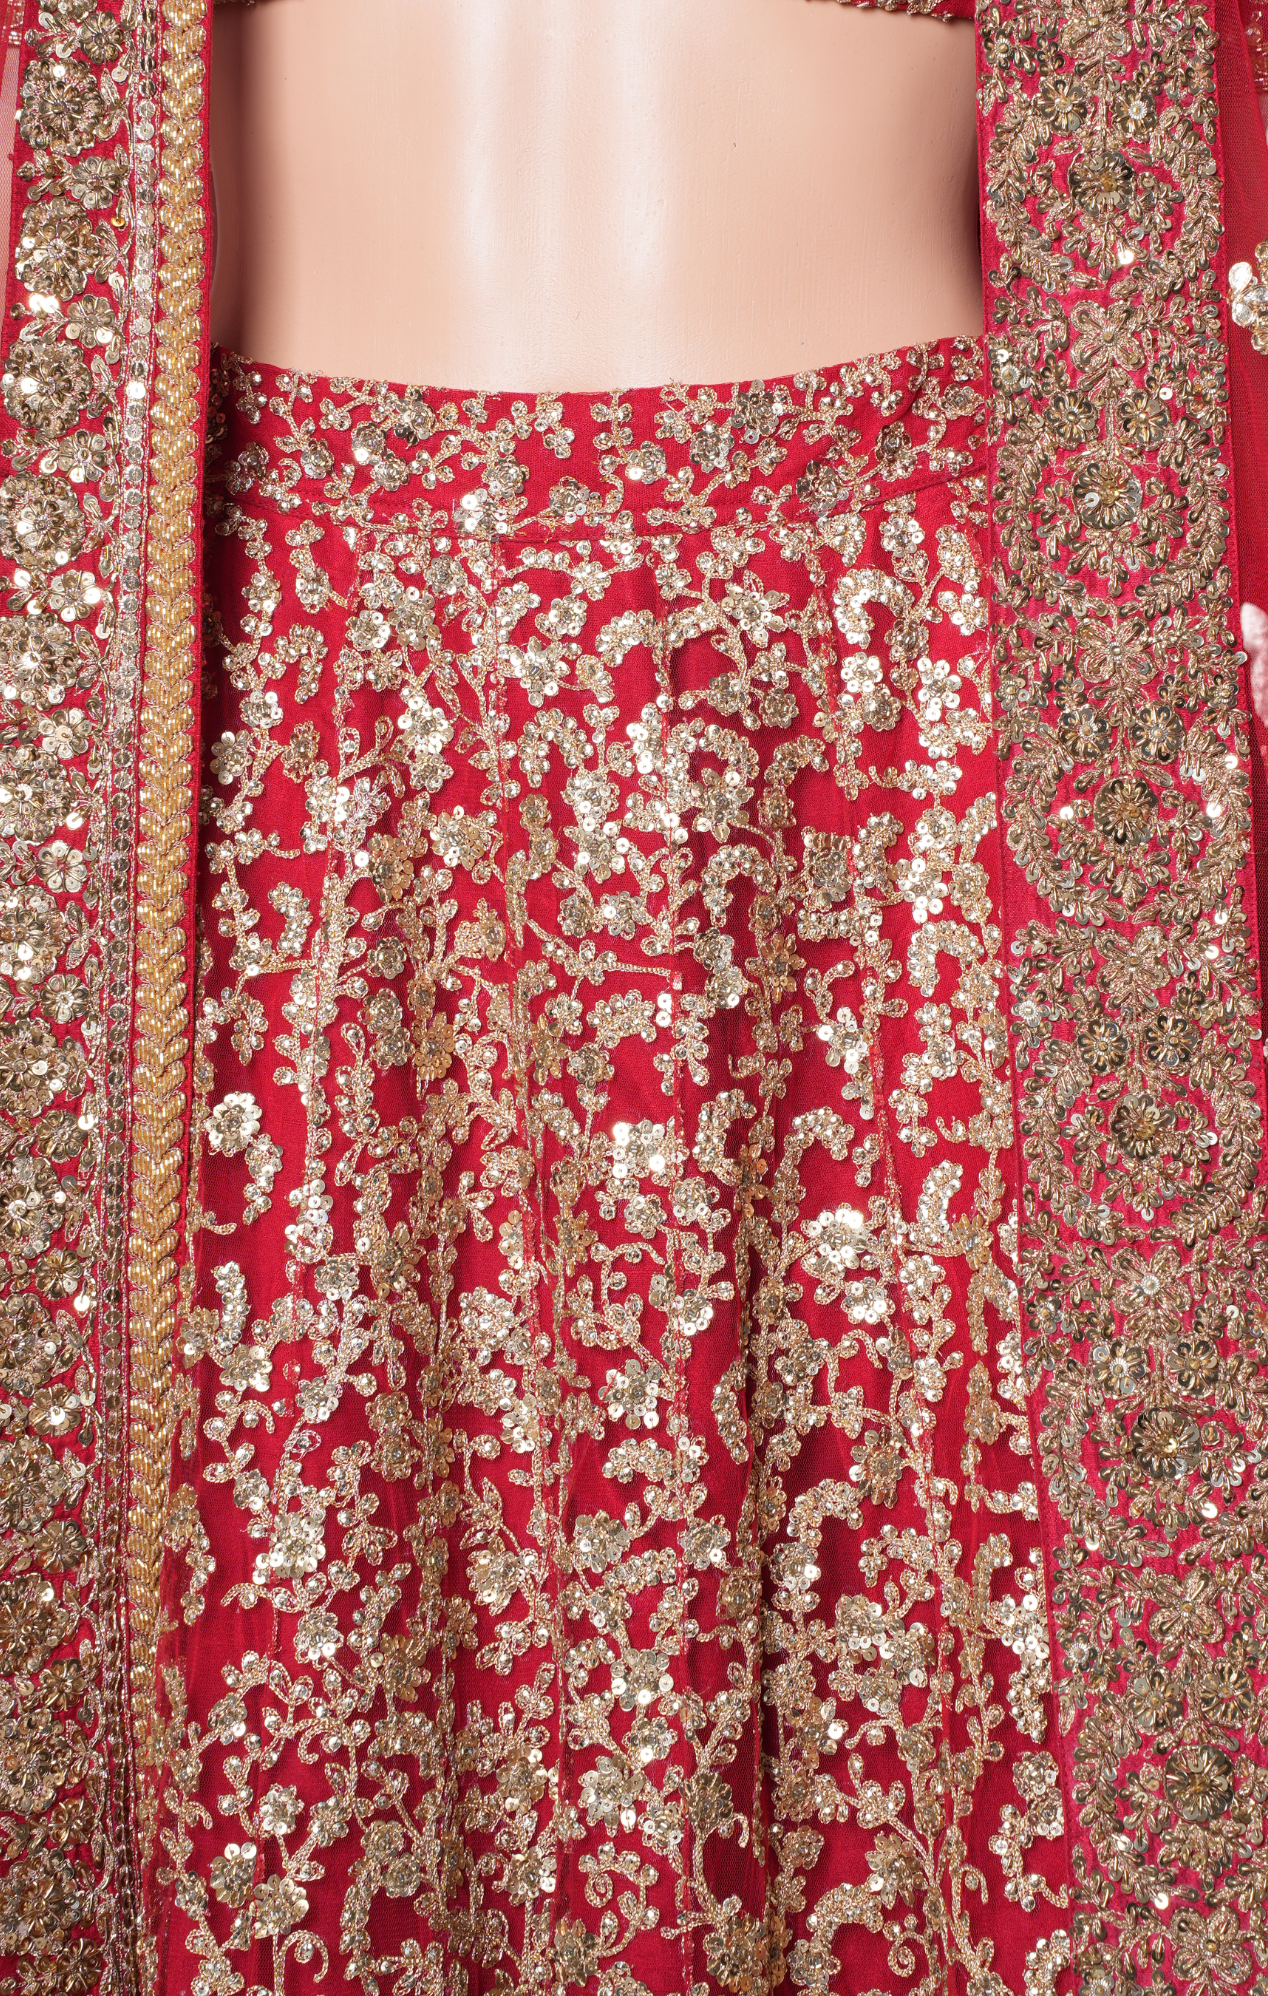 Red Indian Bridal Lehenga for Wedding Indian Heavy Bridal Outfit Sabyasachi  Bridal Lehenga Choli Hand Embroidery Bridal Dress Lehenga - Etsy